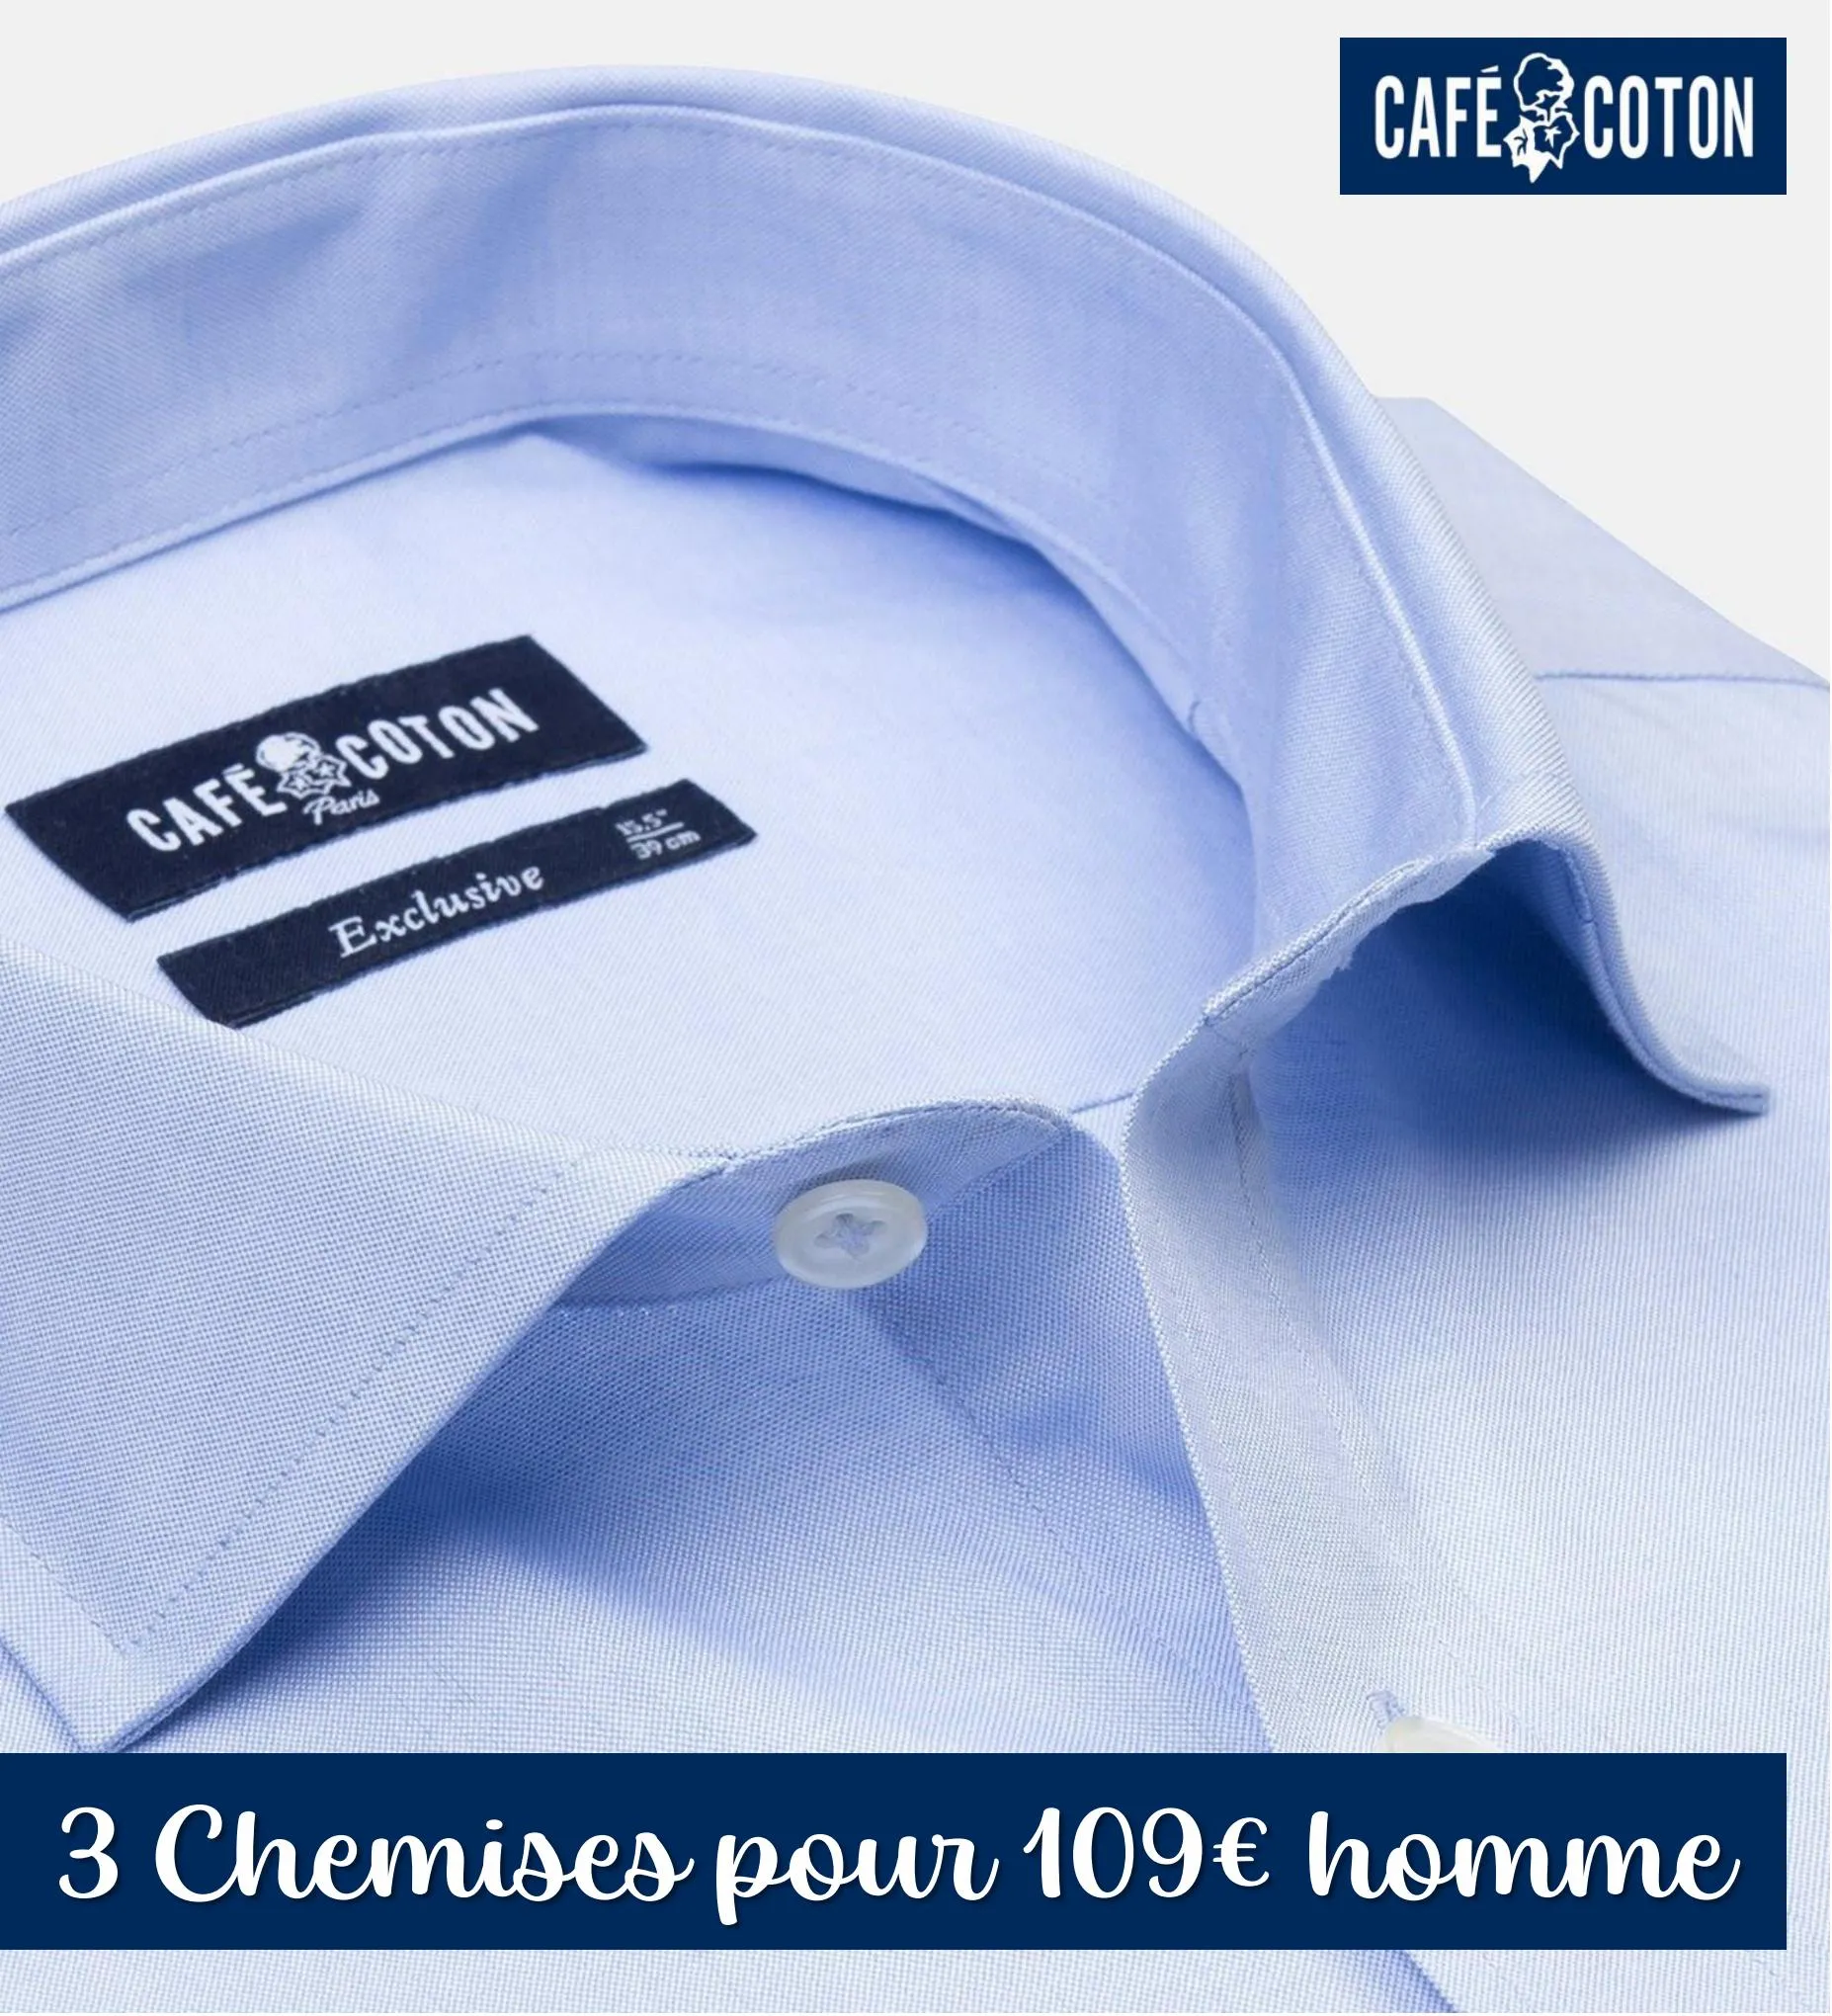 Catalogue 3 Chemises pour 109 homme, page 00001